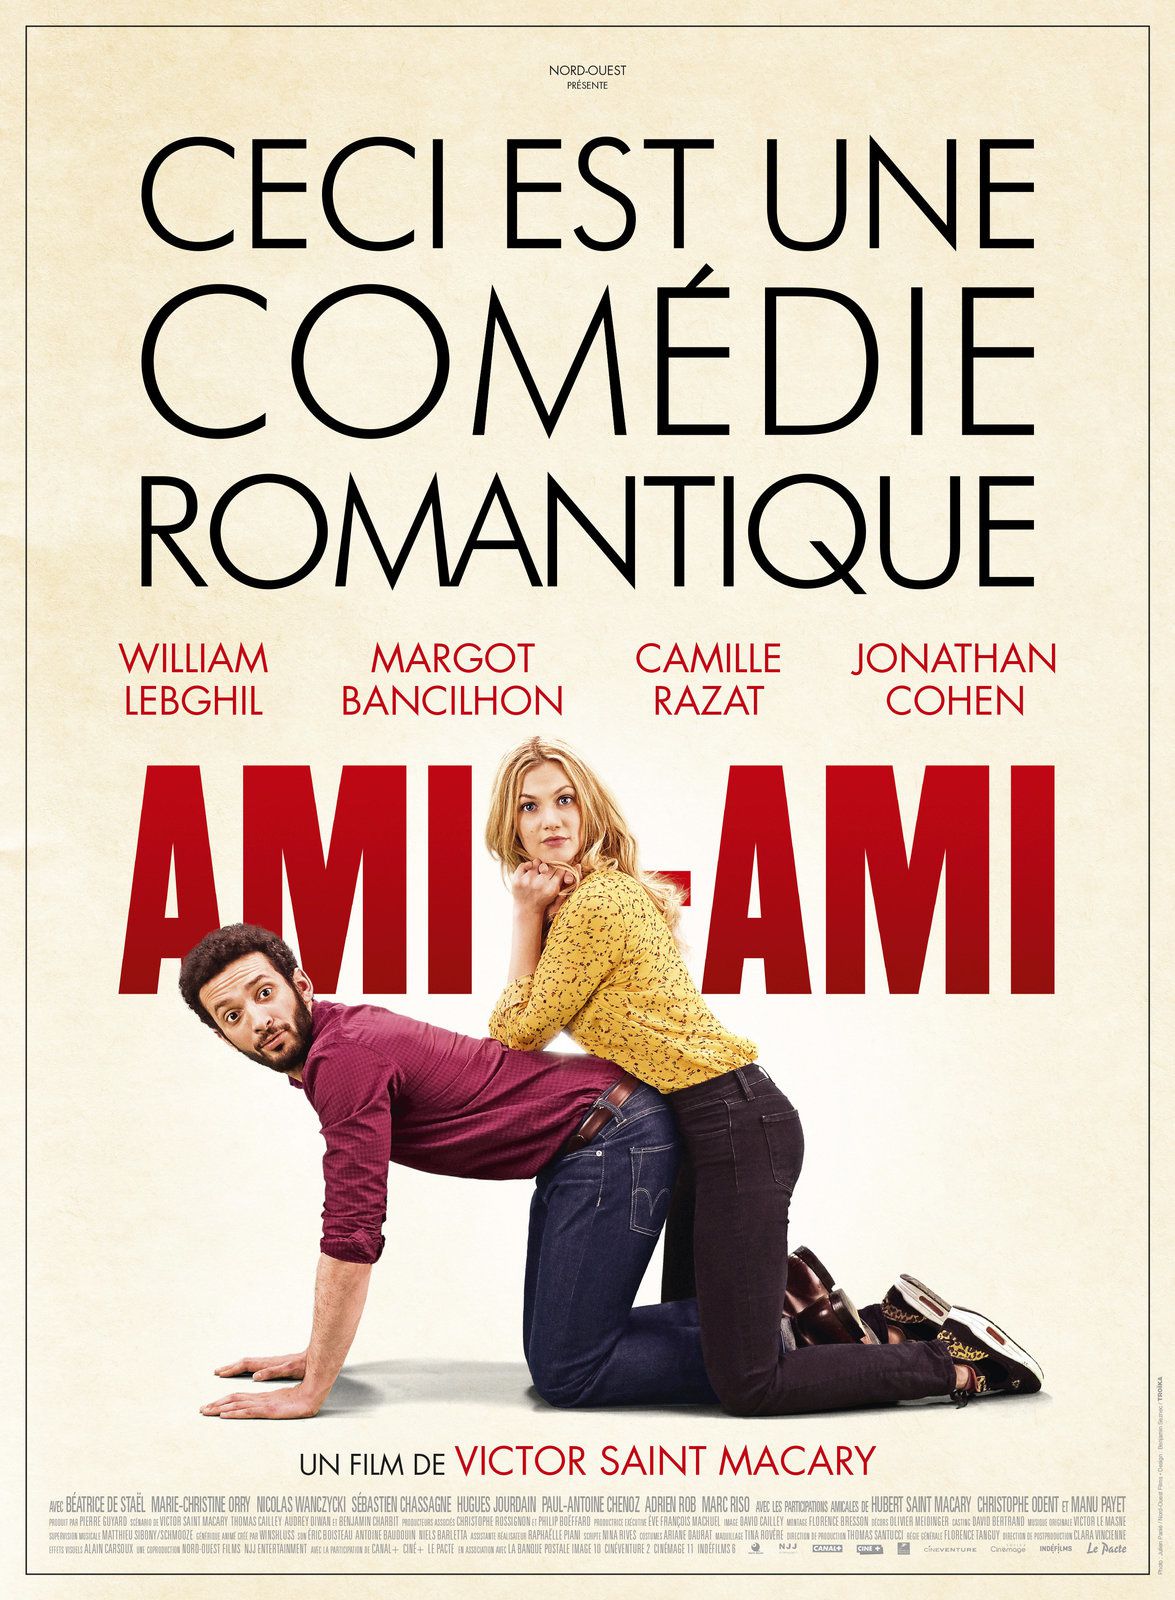 AMI-AMI avec William Lebghil - DÉCOUVREZ 3 EXTRAITS ! Au cinéma le 17 janvier 2018